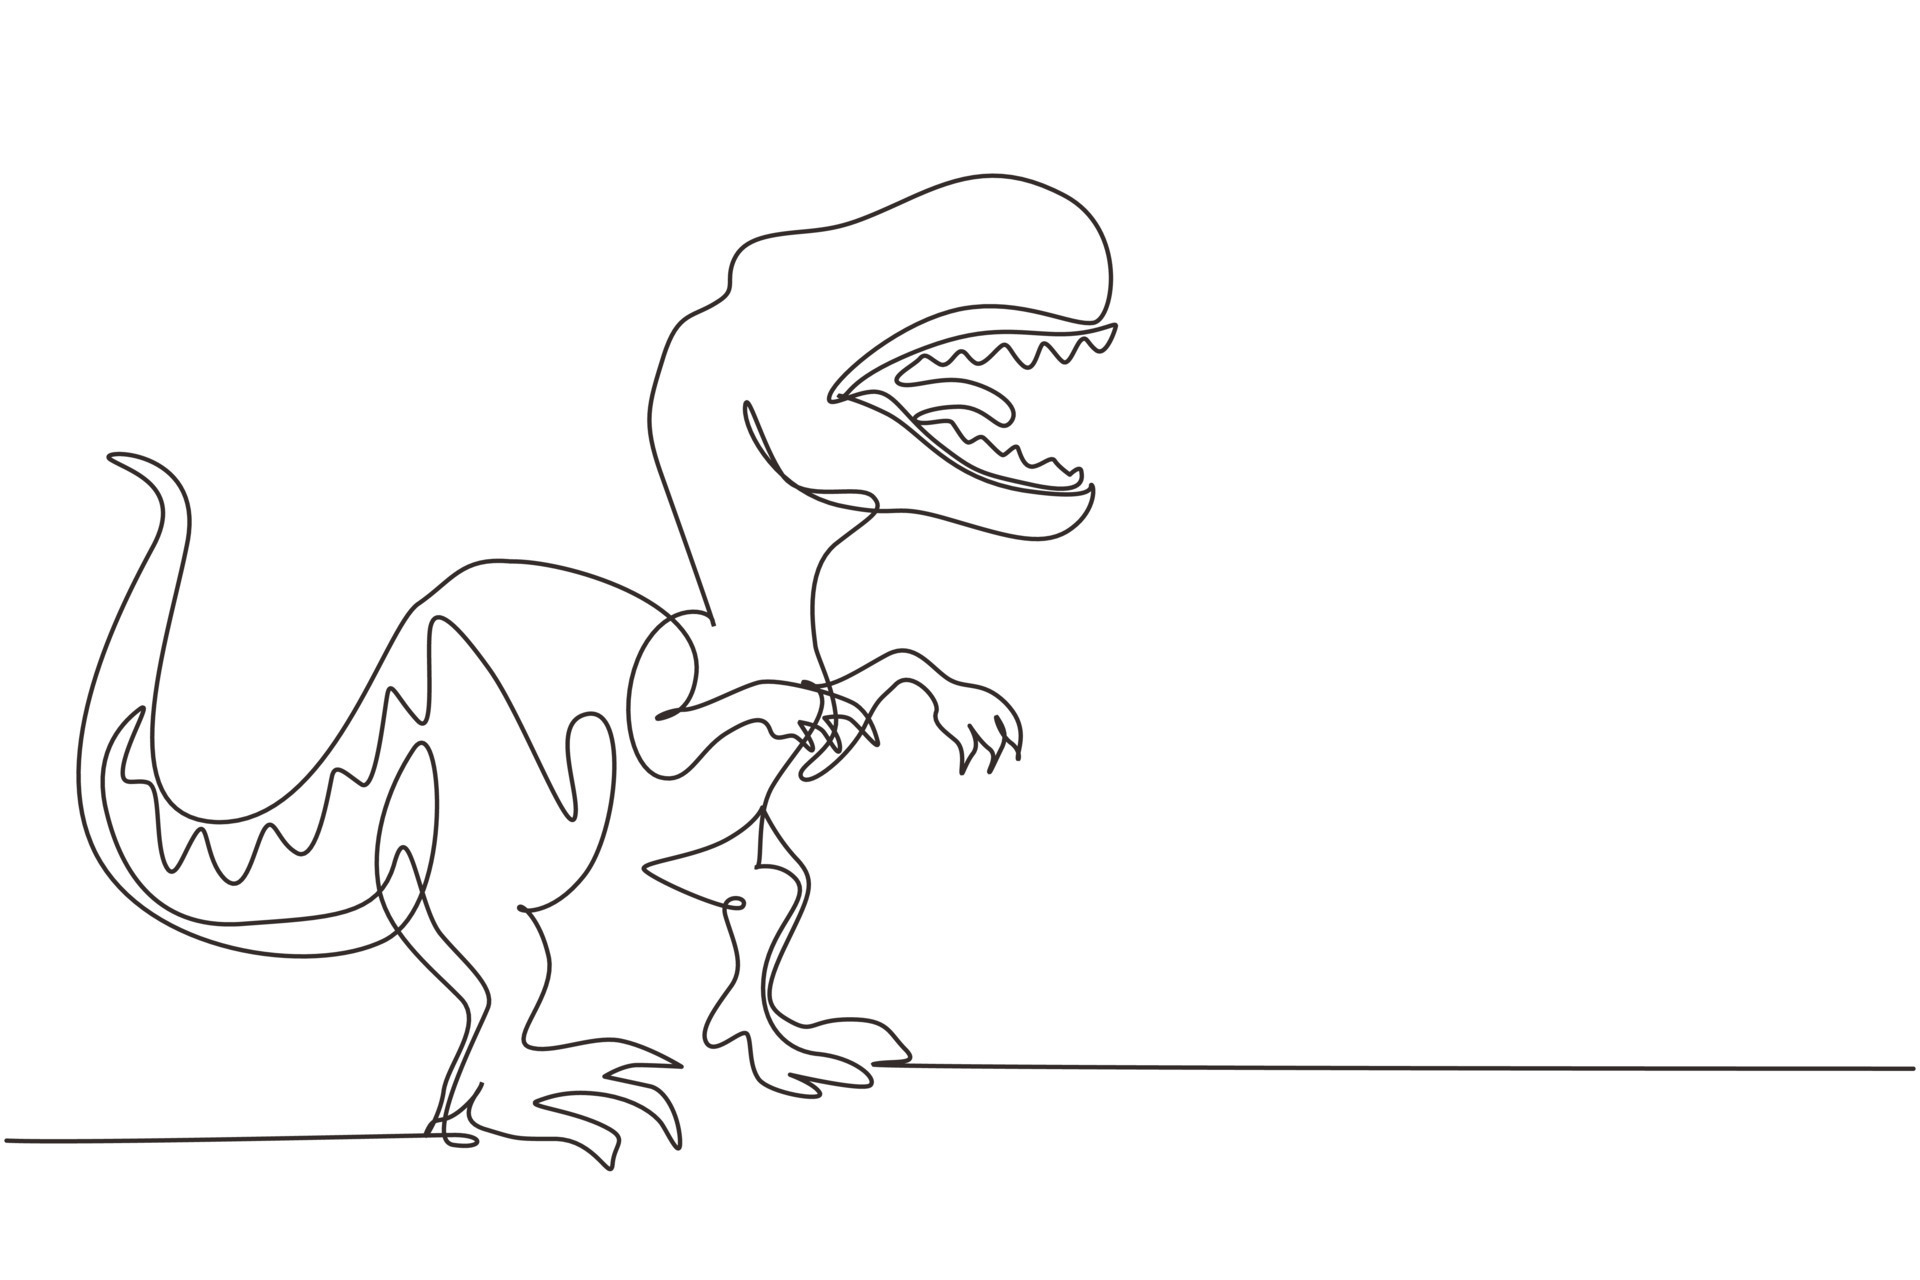 único desenho de uma linha tiranossauro rex. tiranossauro rugindo.  dinossauro carnívoro pré-histórico. animais antigos extintos. história dos  animais. ilustração em vetor gráfico de desenho de linha contínua 8990296  Vetor no Vecteezy